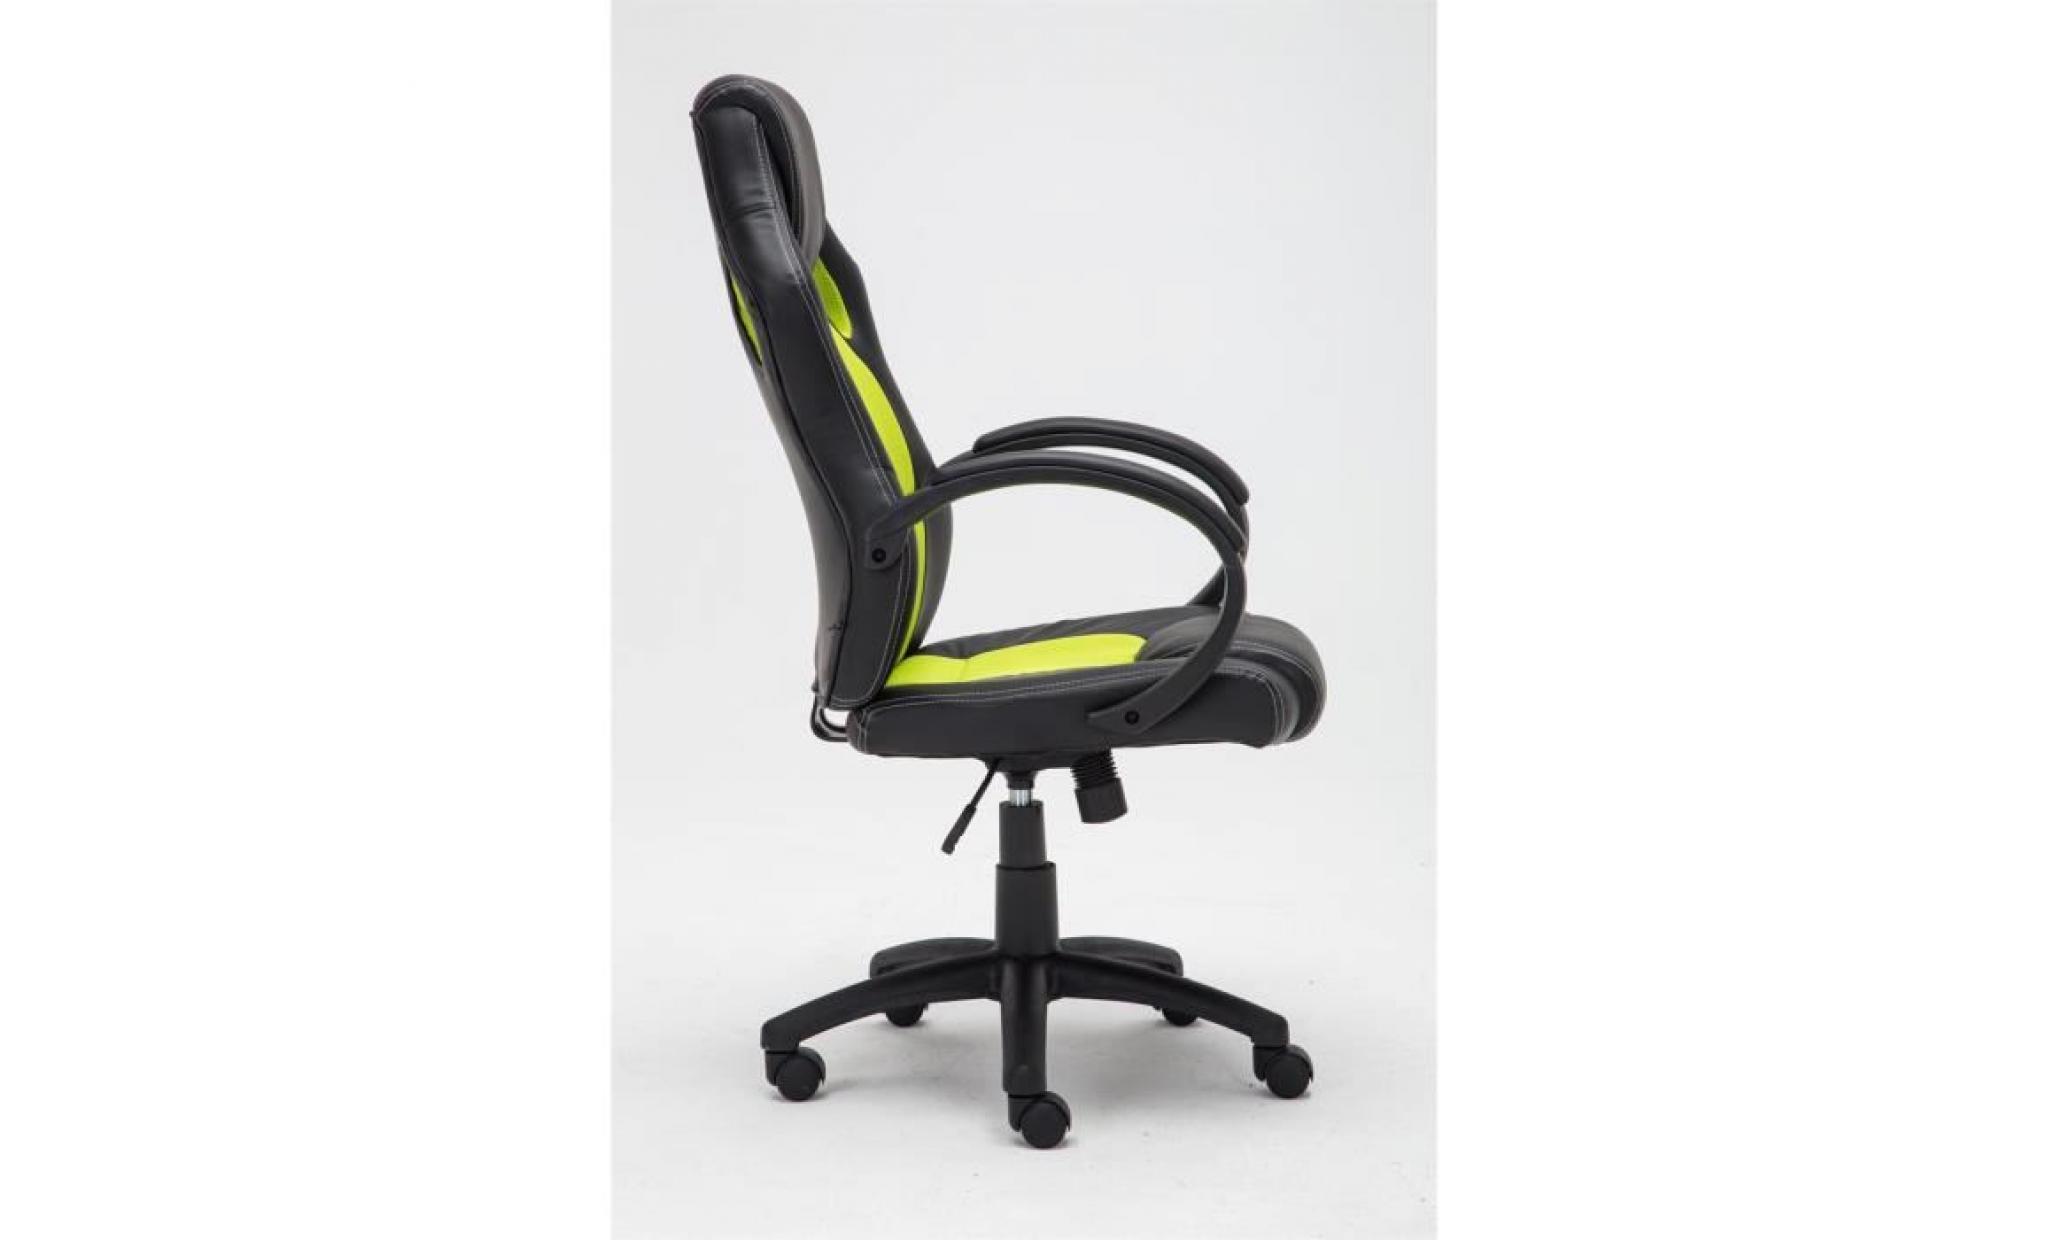 clp fauteuil de bureau fire, chaise bureau ajustable en hauteur de luxe, revêtement en pu, 7 couleurs au choix 110 cm bleu pas cher